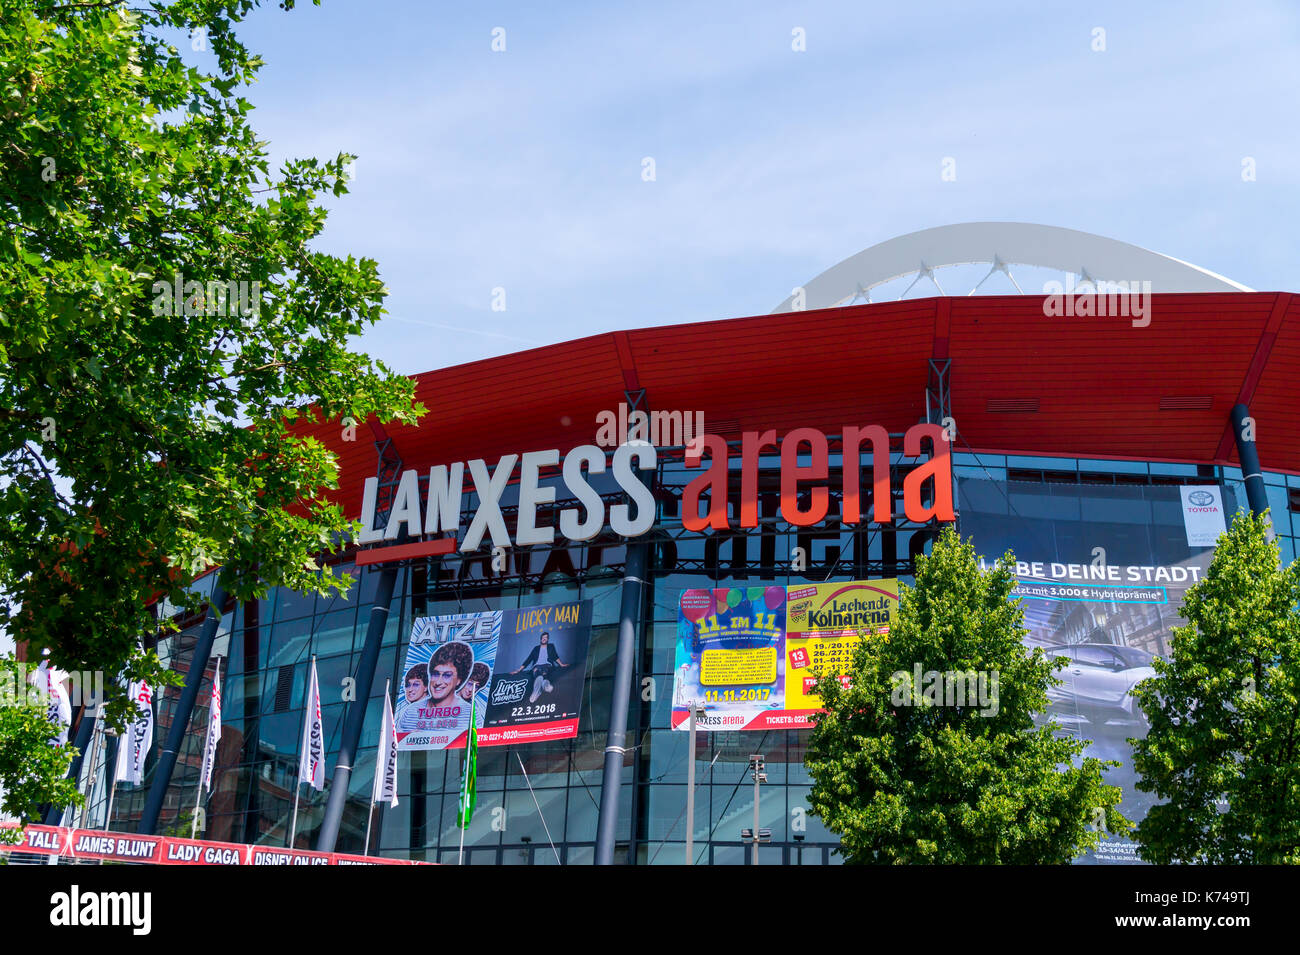 Colonia, Germania - 4 luglio 2017: Lanxess Arena Foto Stock